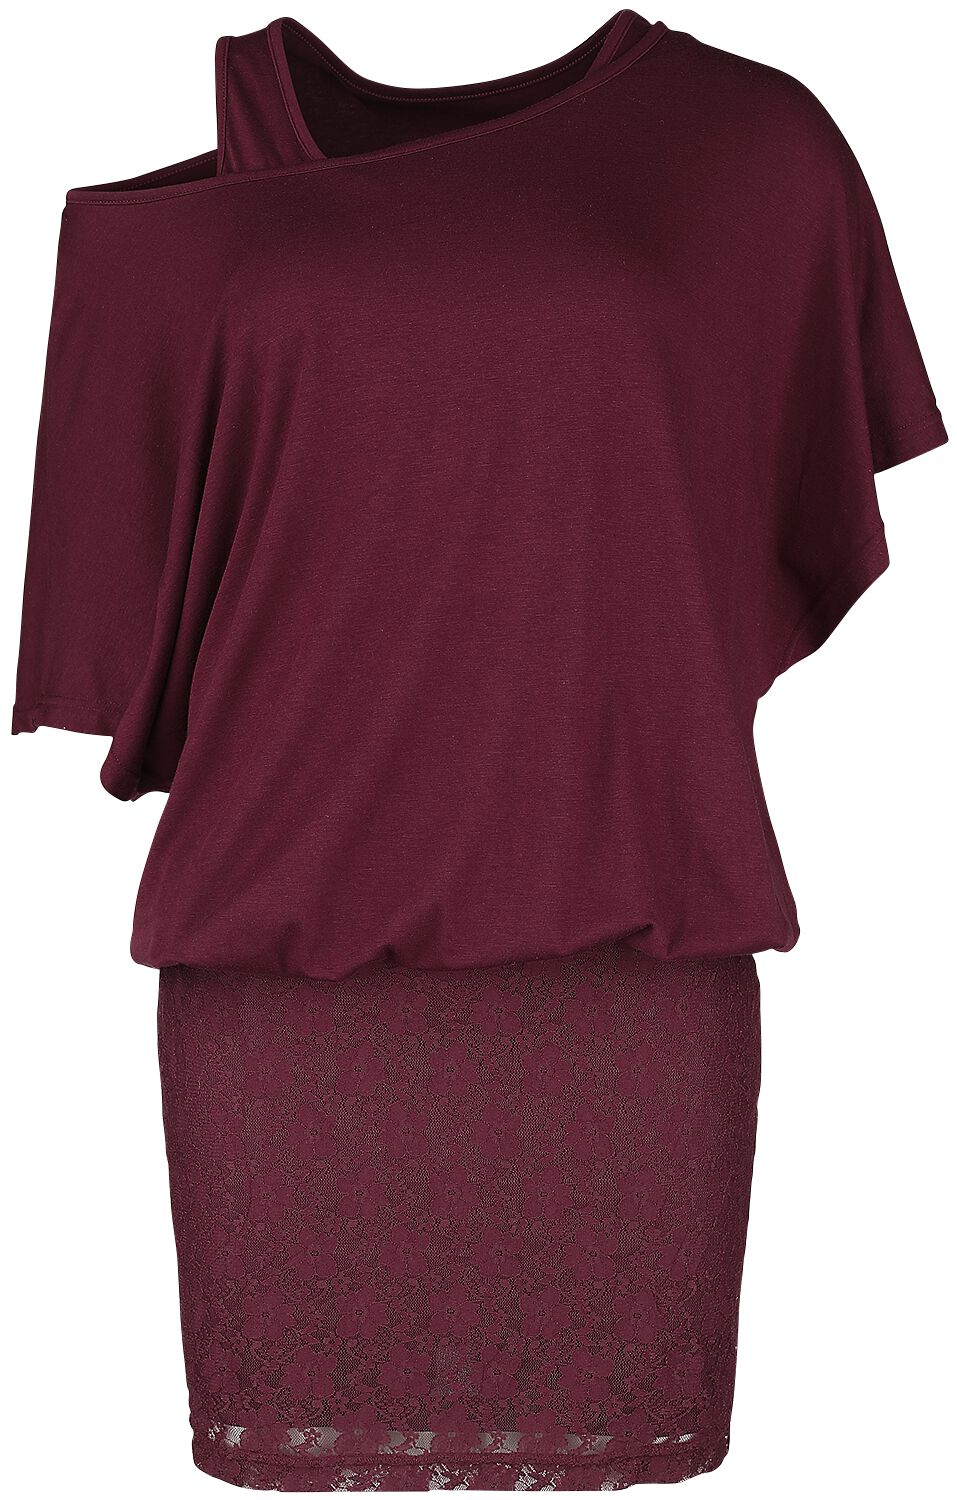 Robe courte de Black Premium by EMP - Dunkelrotes Layer-Look Kleid - XS à M - pour Femme - rouge fon